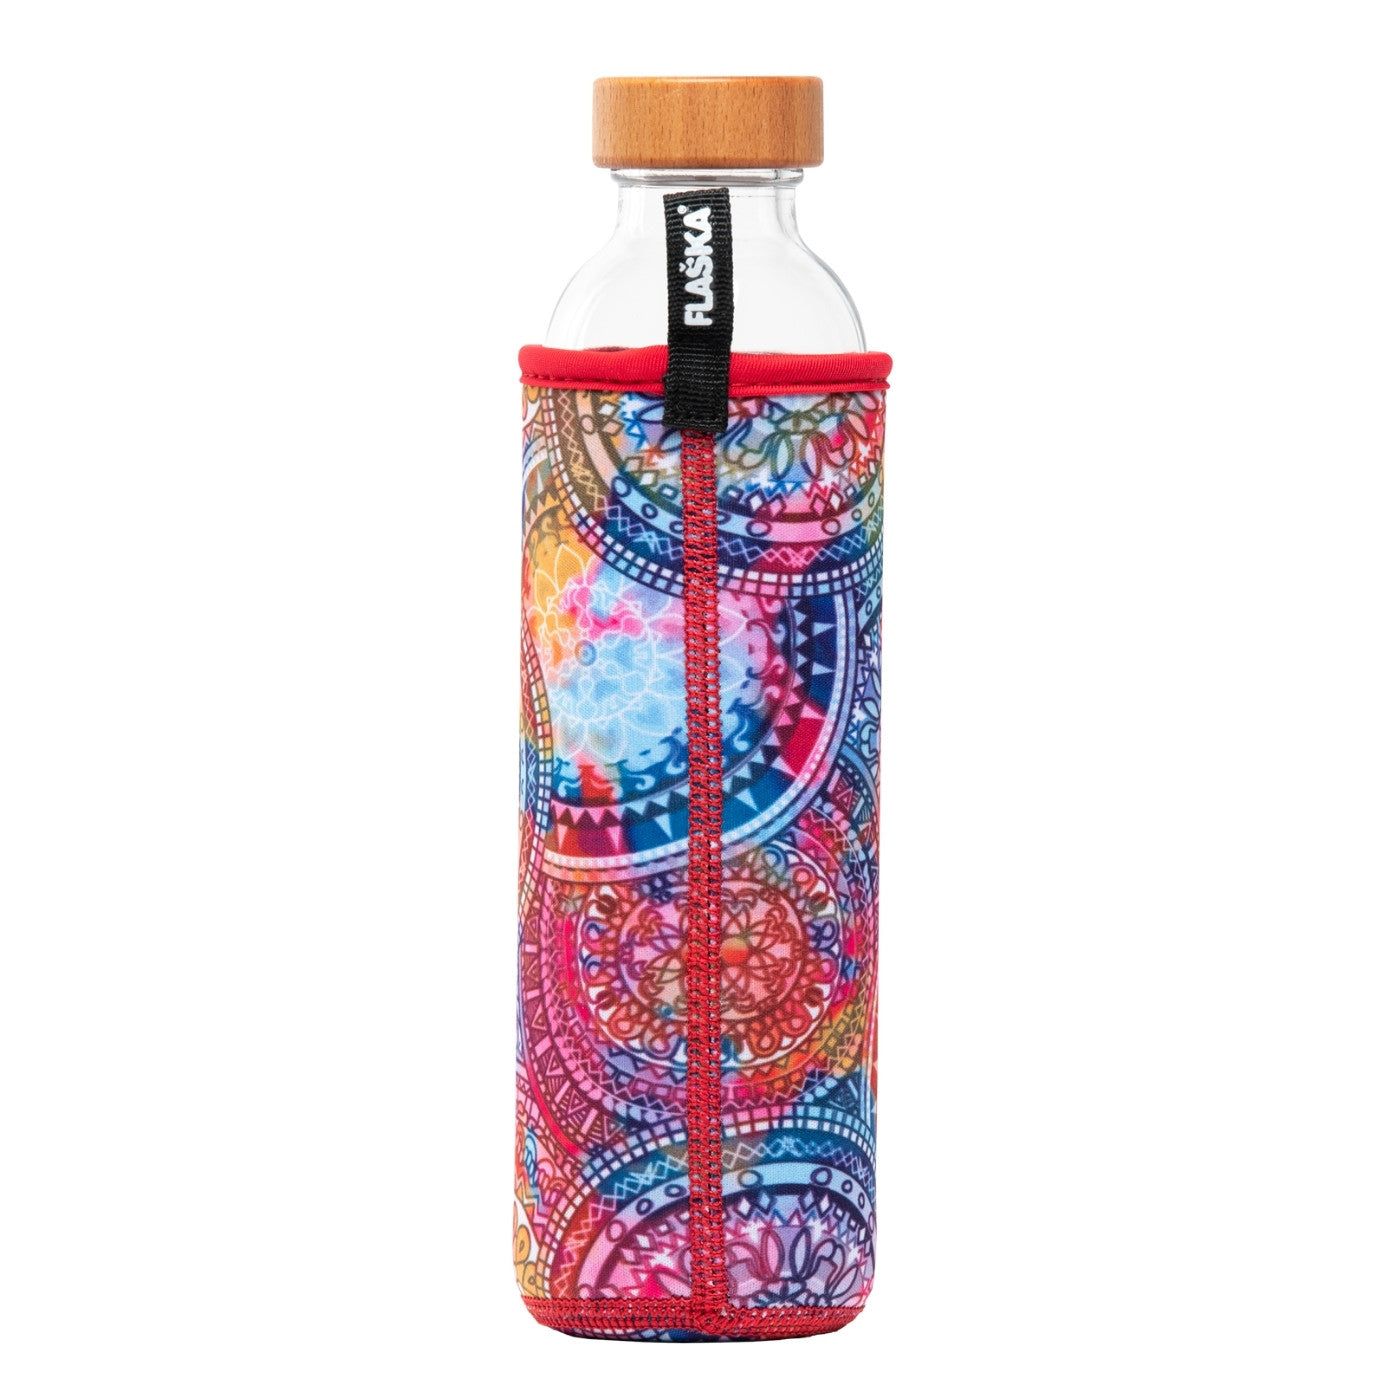 rückansicht der wiederverwendbaren flaska glasflasche mit roter neopren schutzhülle mit mandalas design